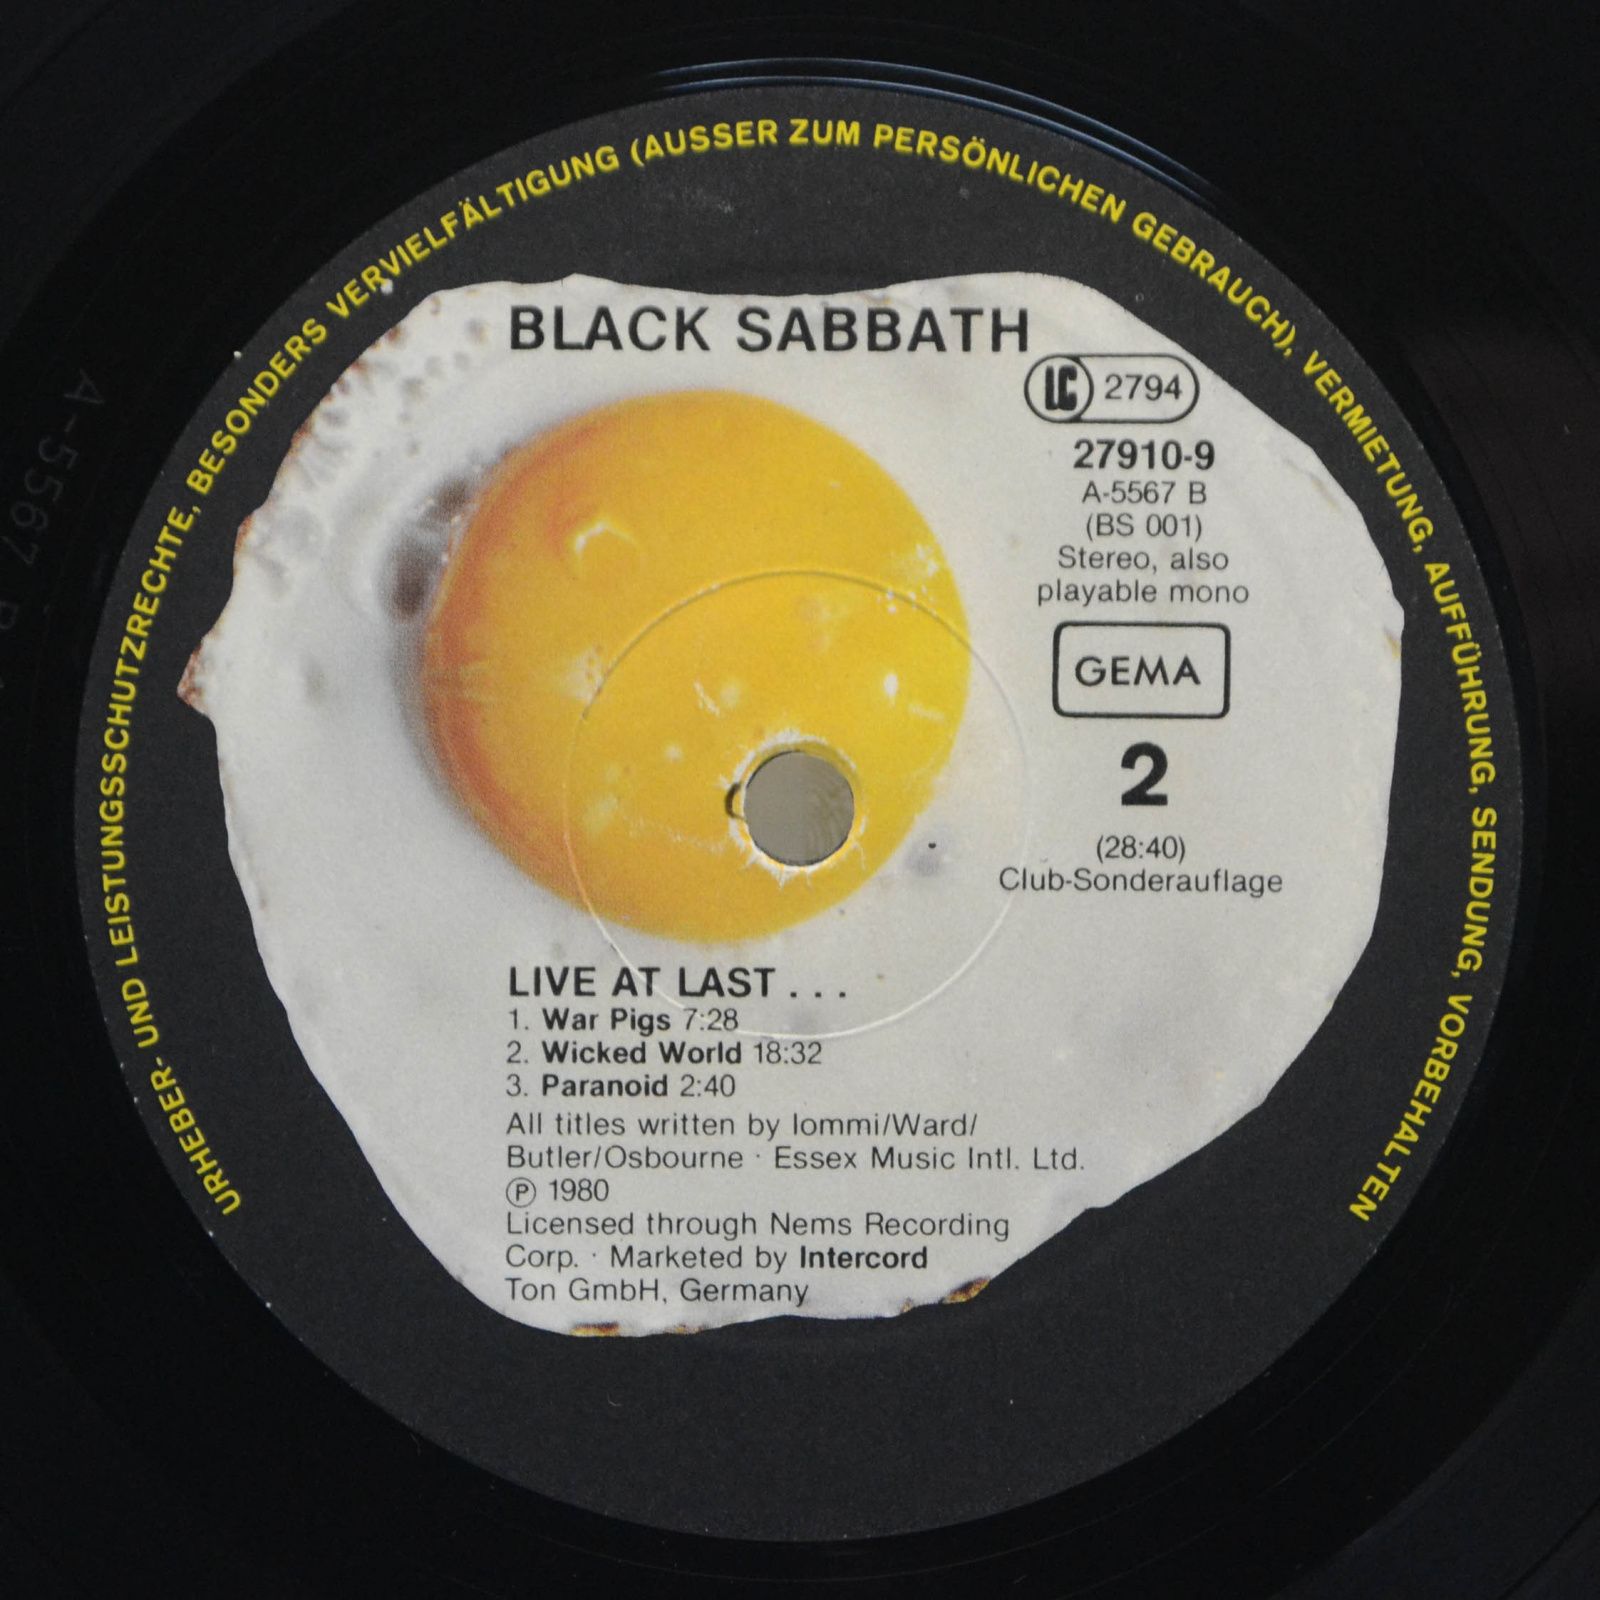 Black Sabbath — Live At Last..., 1980